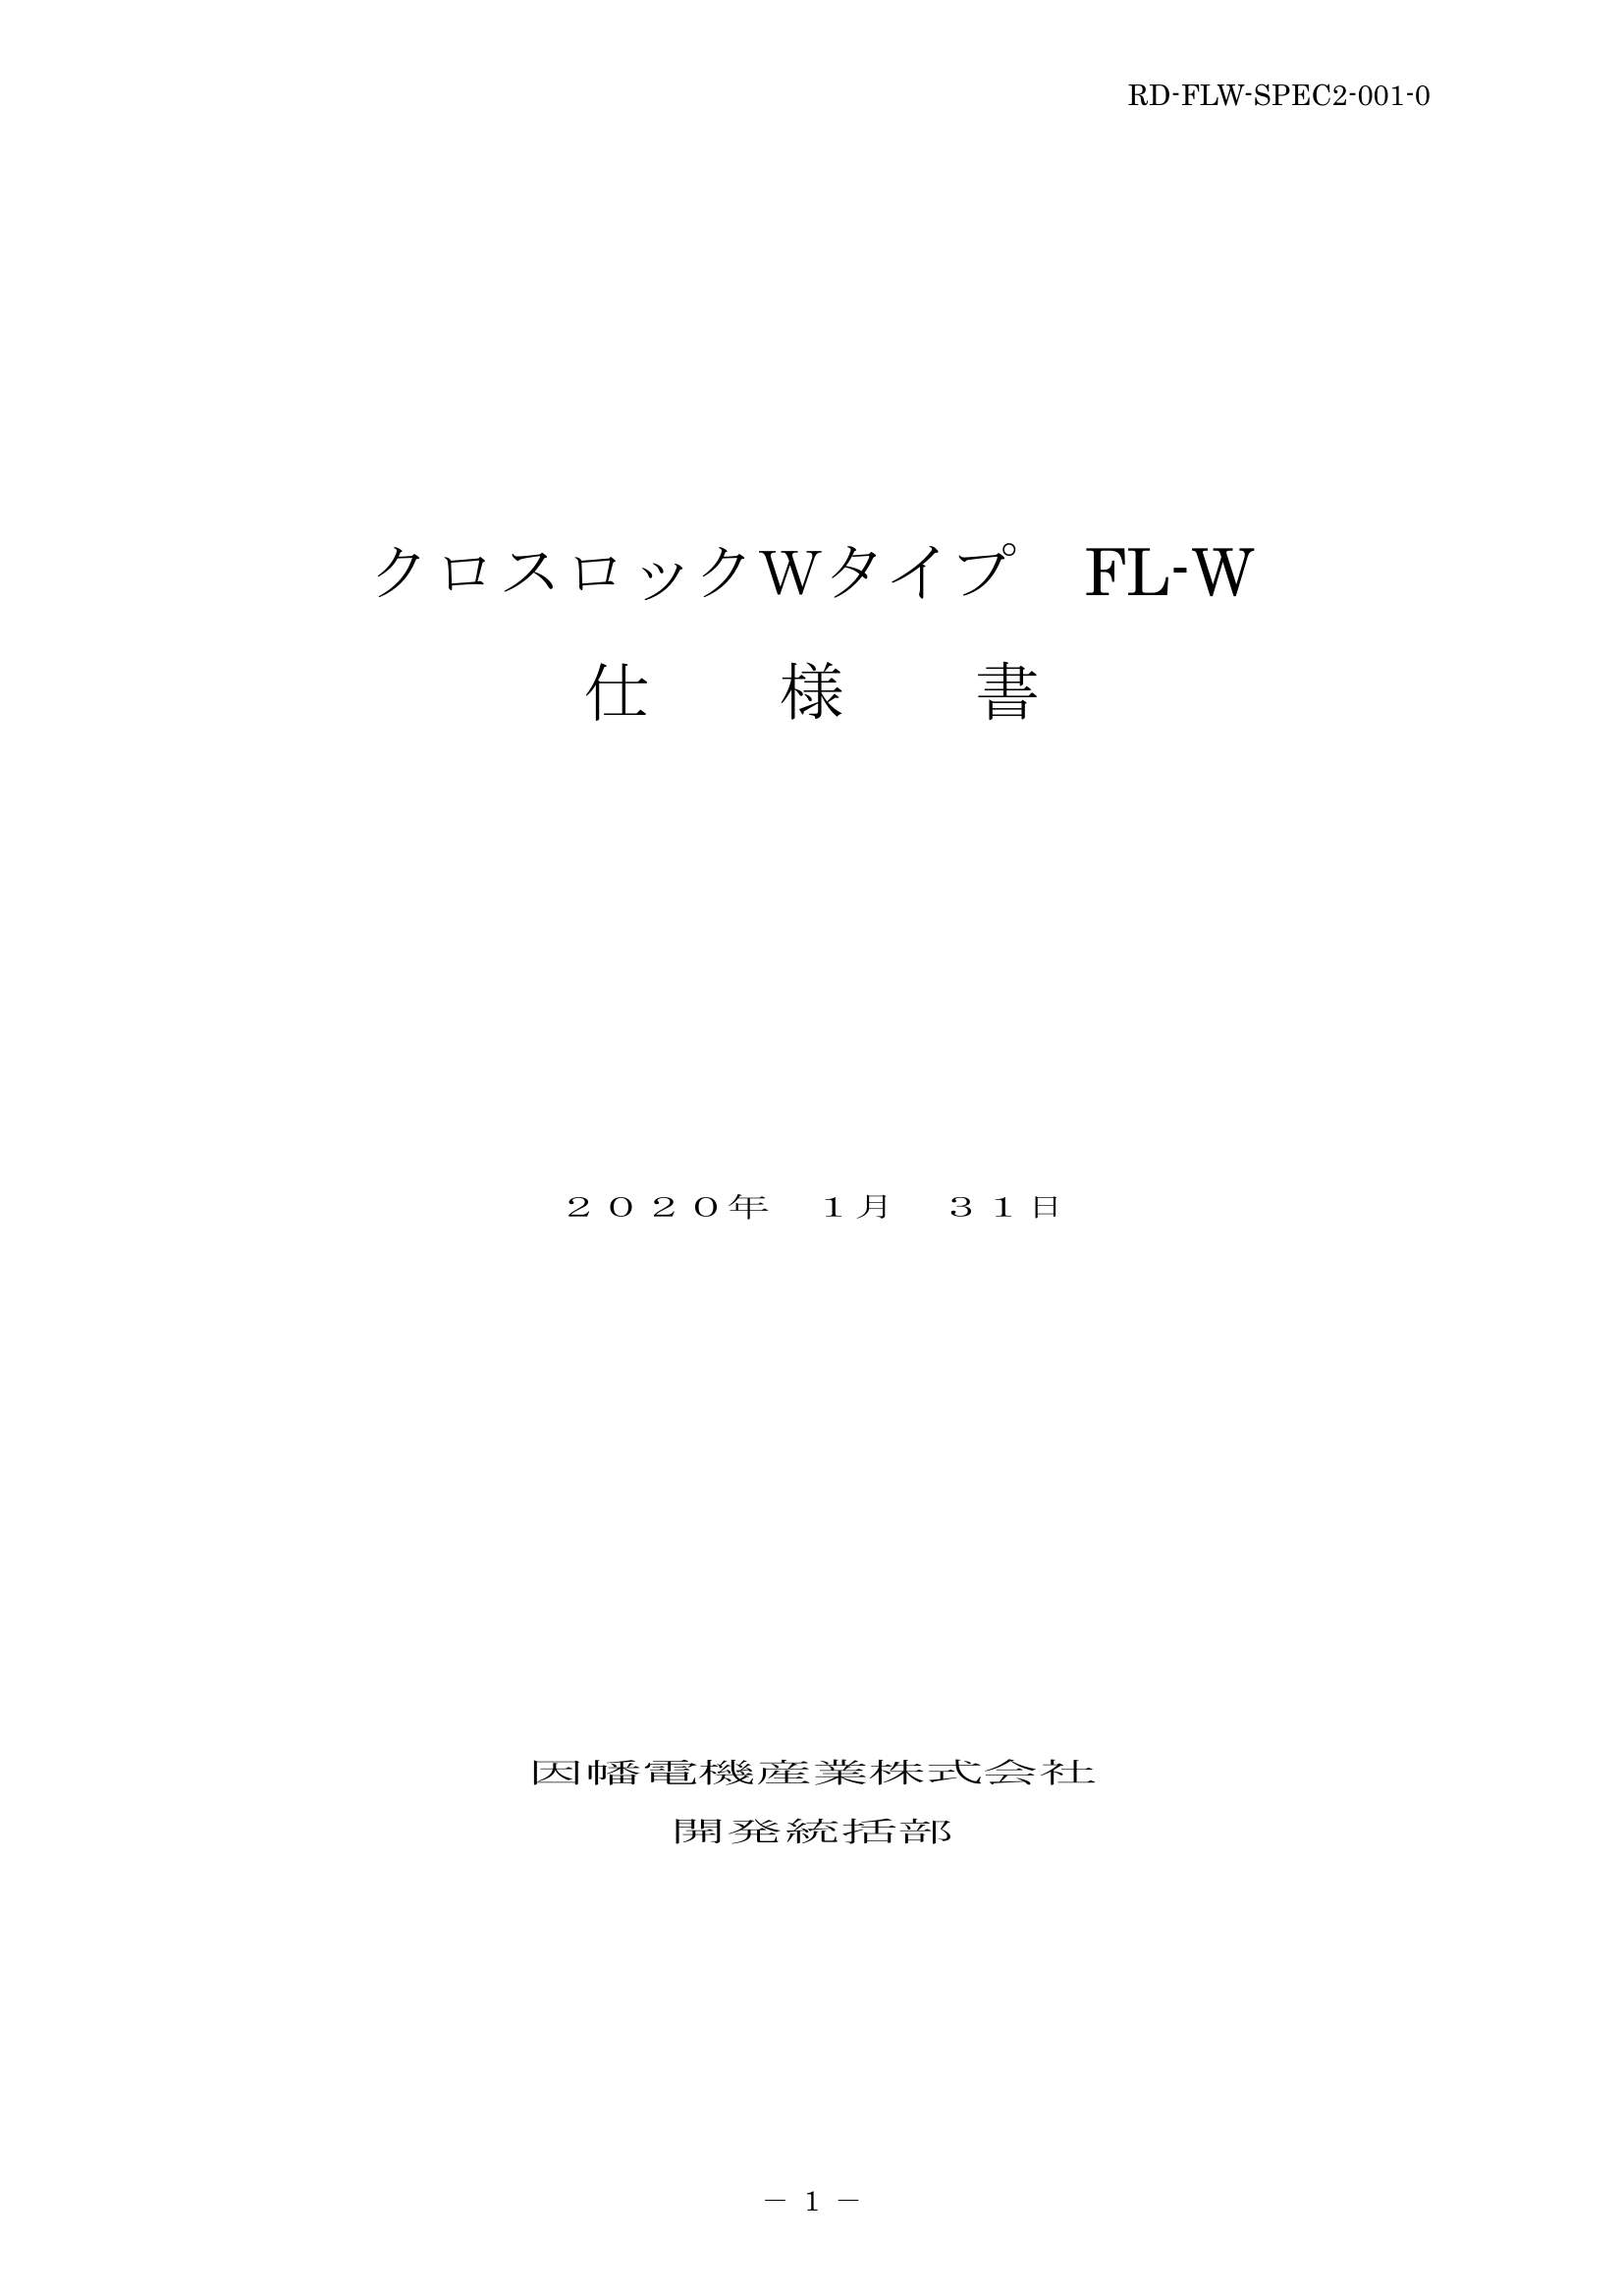 FL-W_仕様書_20200131.pdf